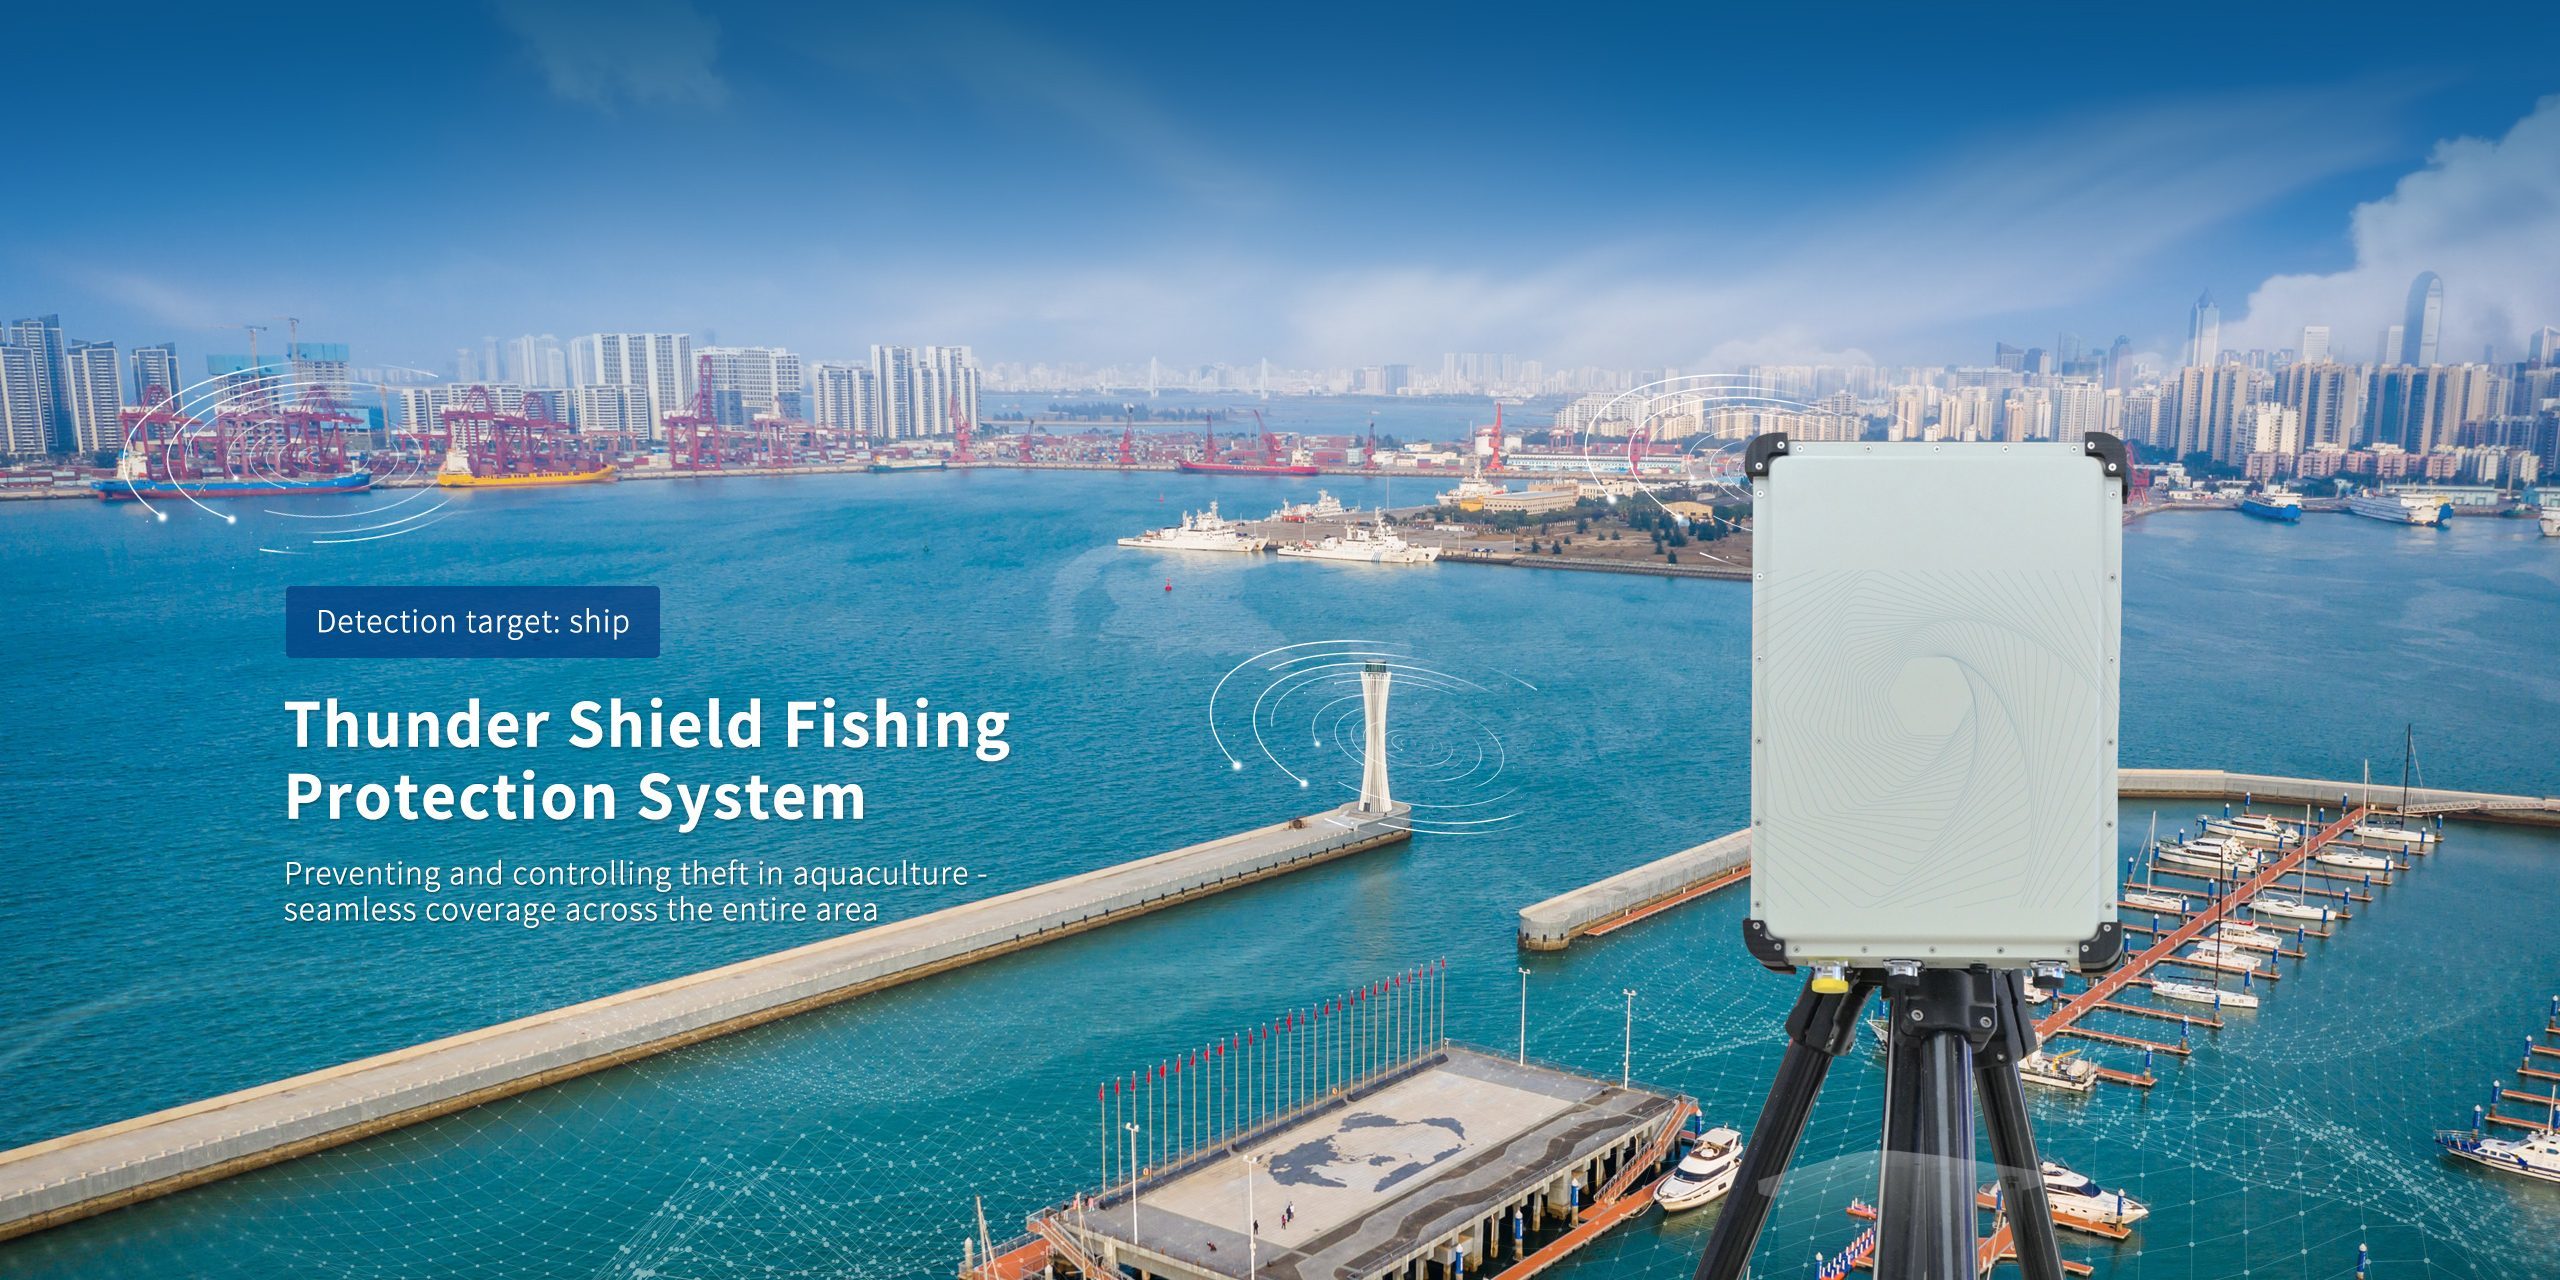 Lightning Shield Fishing System